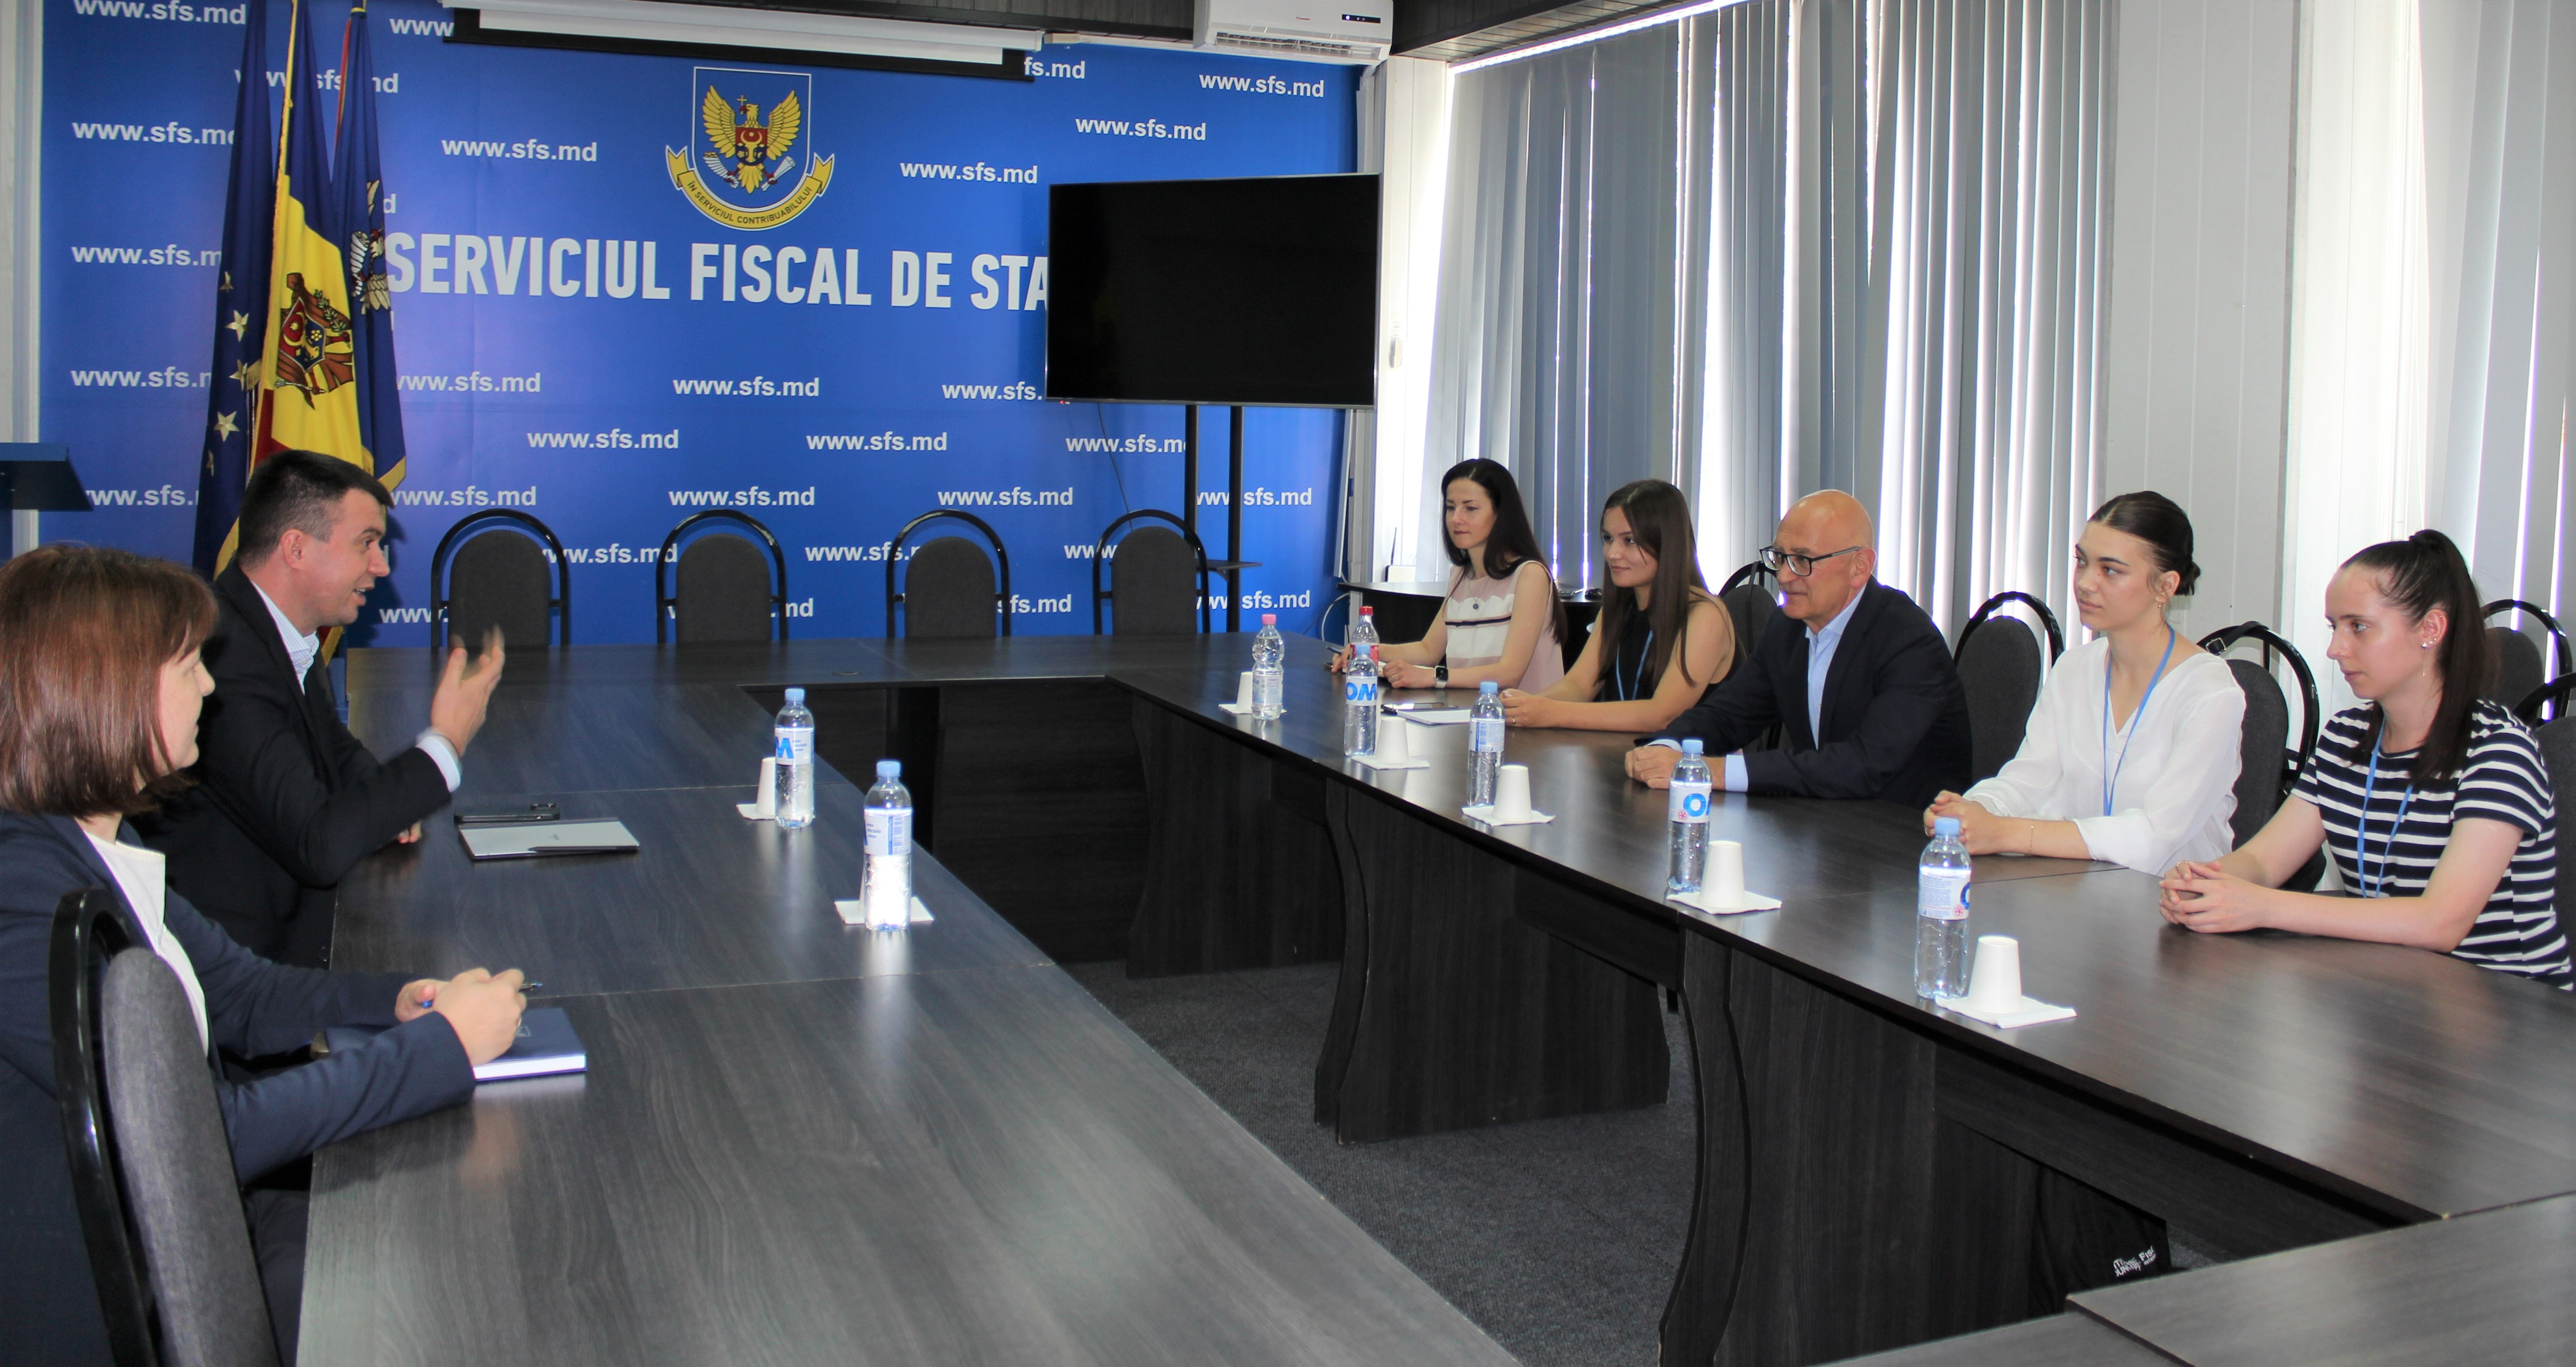 Serviciul Fiscal de Stat participă în cadrul Programului comun de stagii al Guvernului și al Uniunii Europene